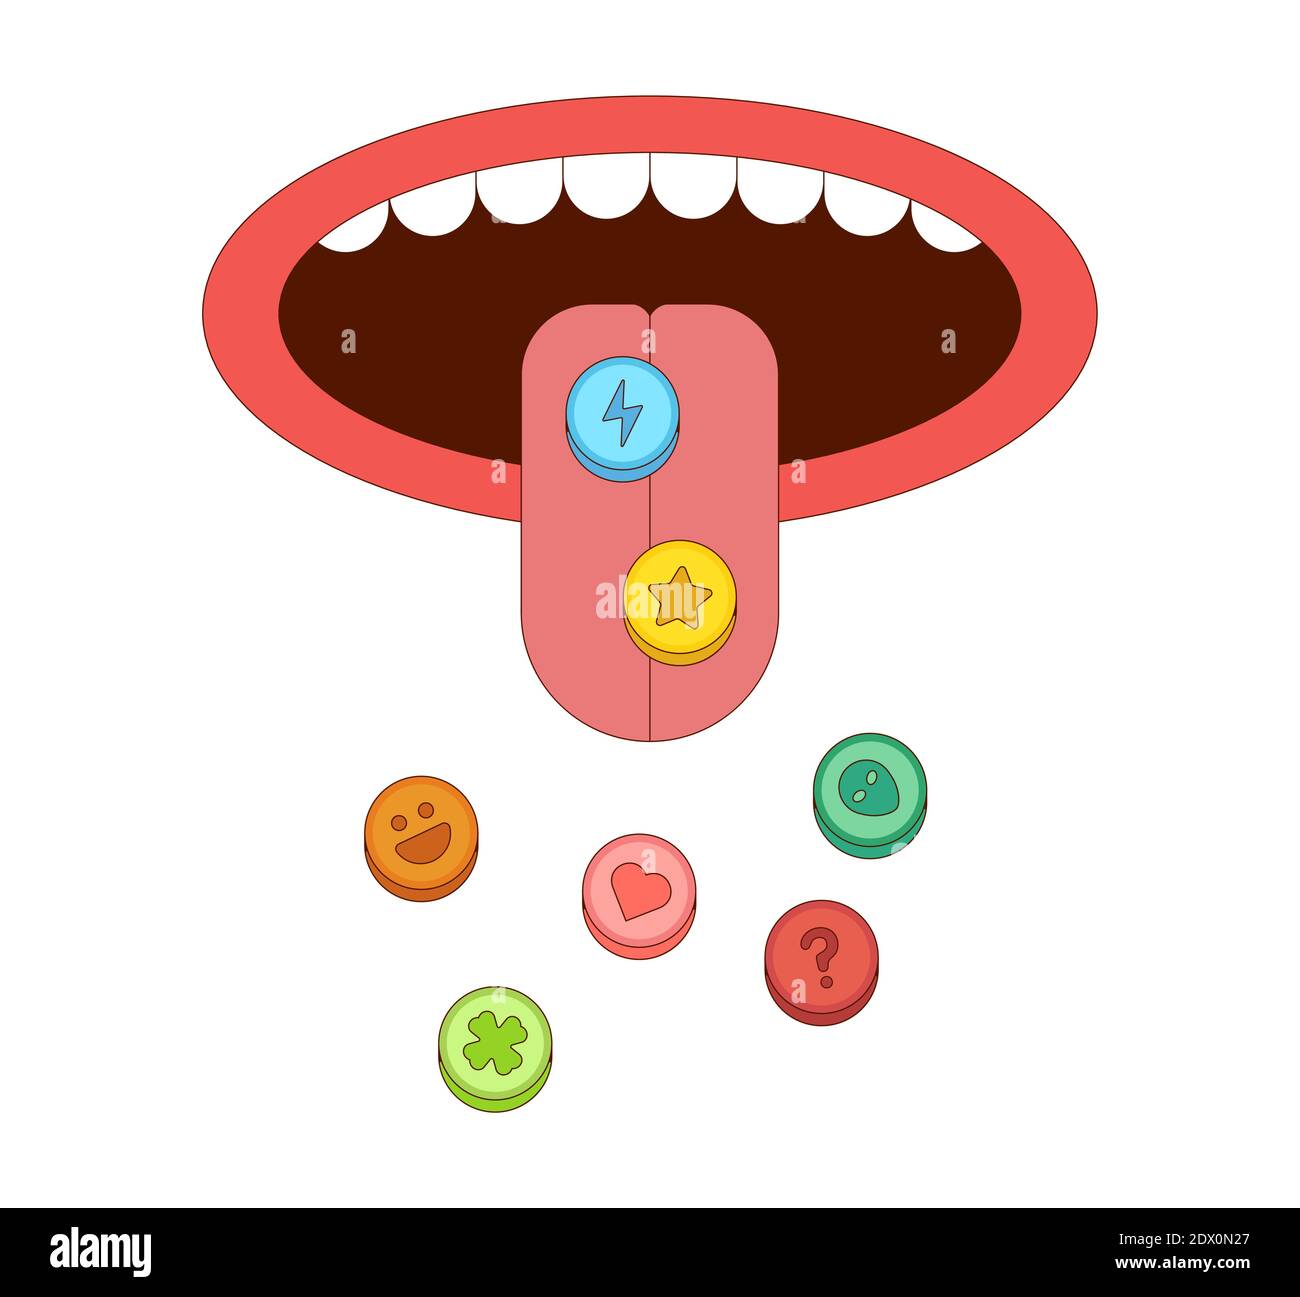 Langue avec pilules d'ecstasy illustration vectorielle dans le style de dessin animé. Notion de toxicomanie Illustration de Vecteur